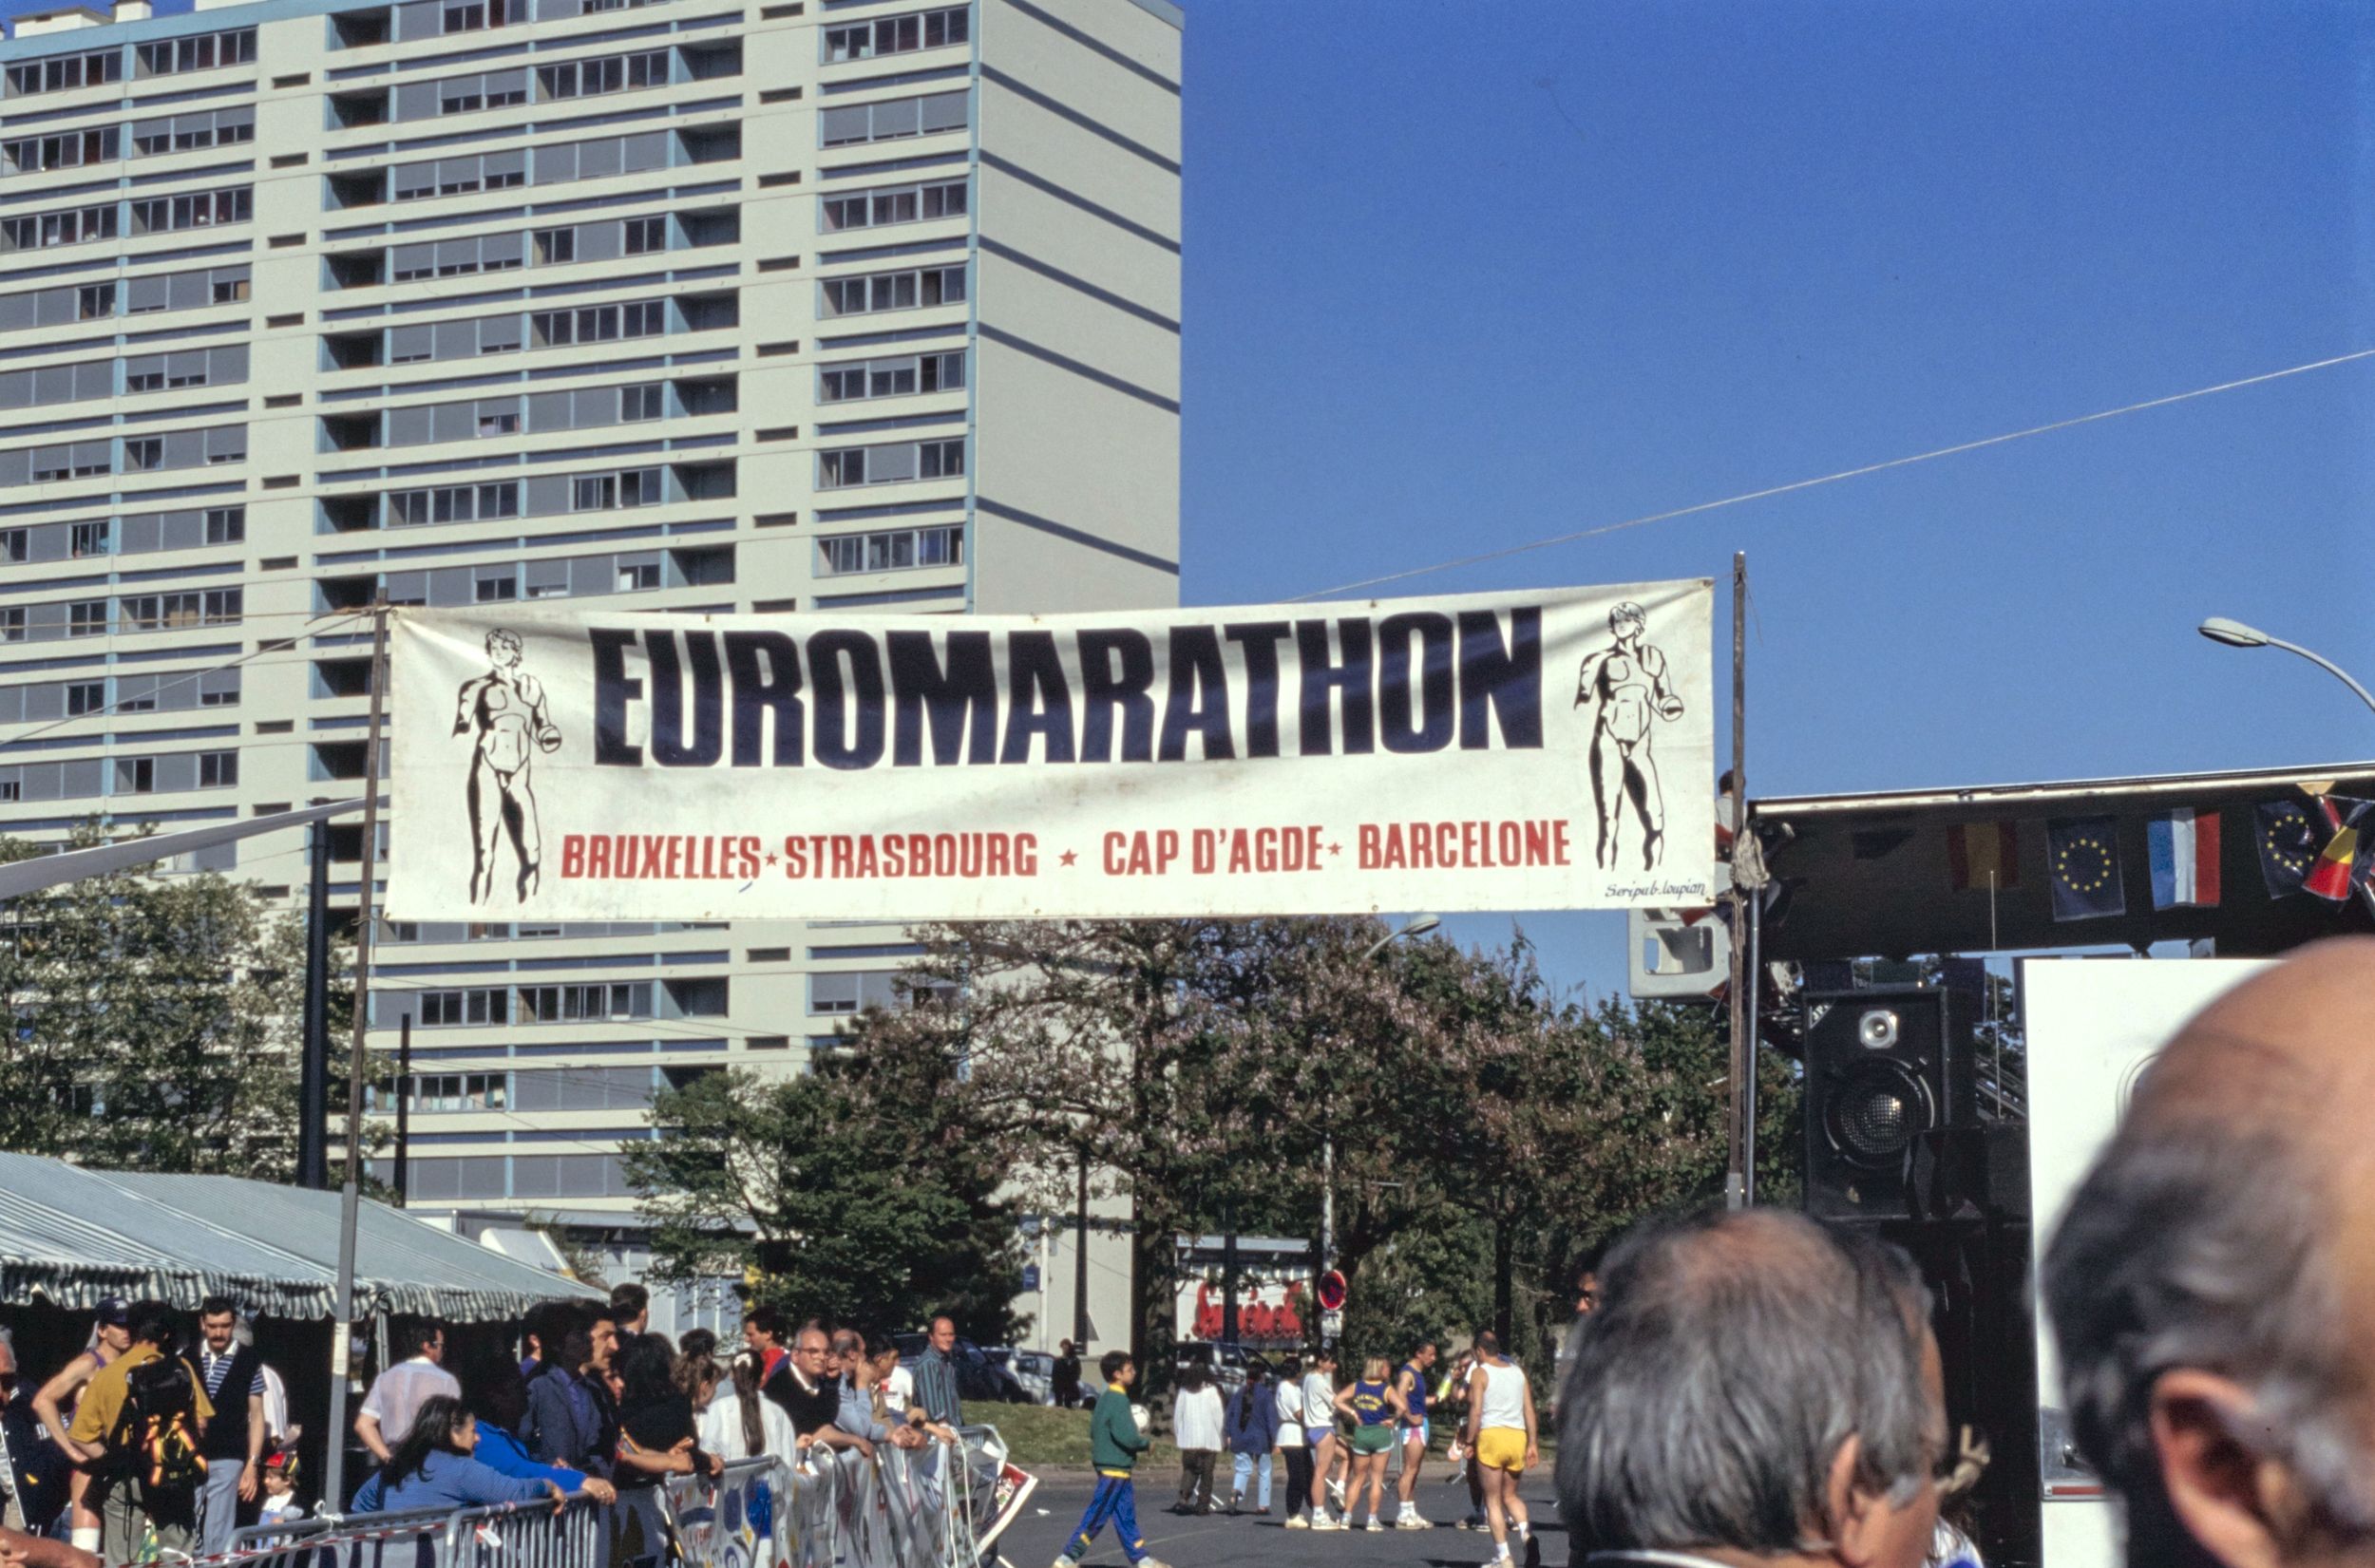 Arrivée de l'Euromarathon dans le 9e arrondissement : photo. couleur (1992, cote 1518WP/1298/30, repro. commerciale interdite)